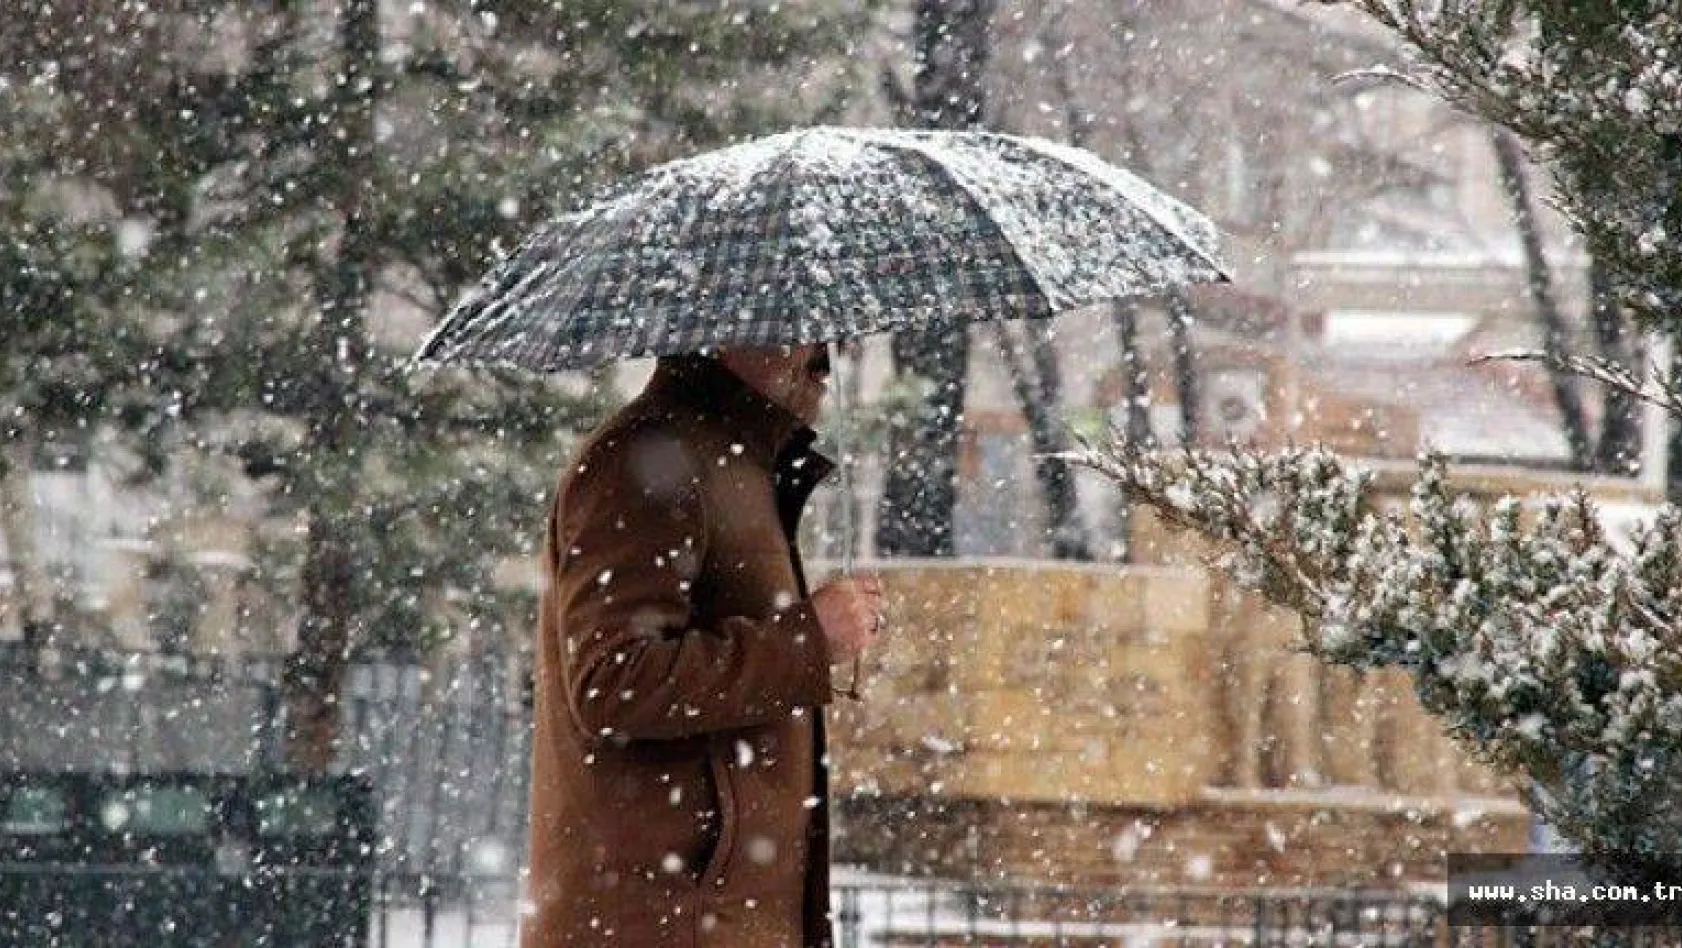 Meteoroloji'den İstanbul'a kar uyarısı!